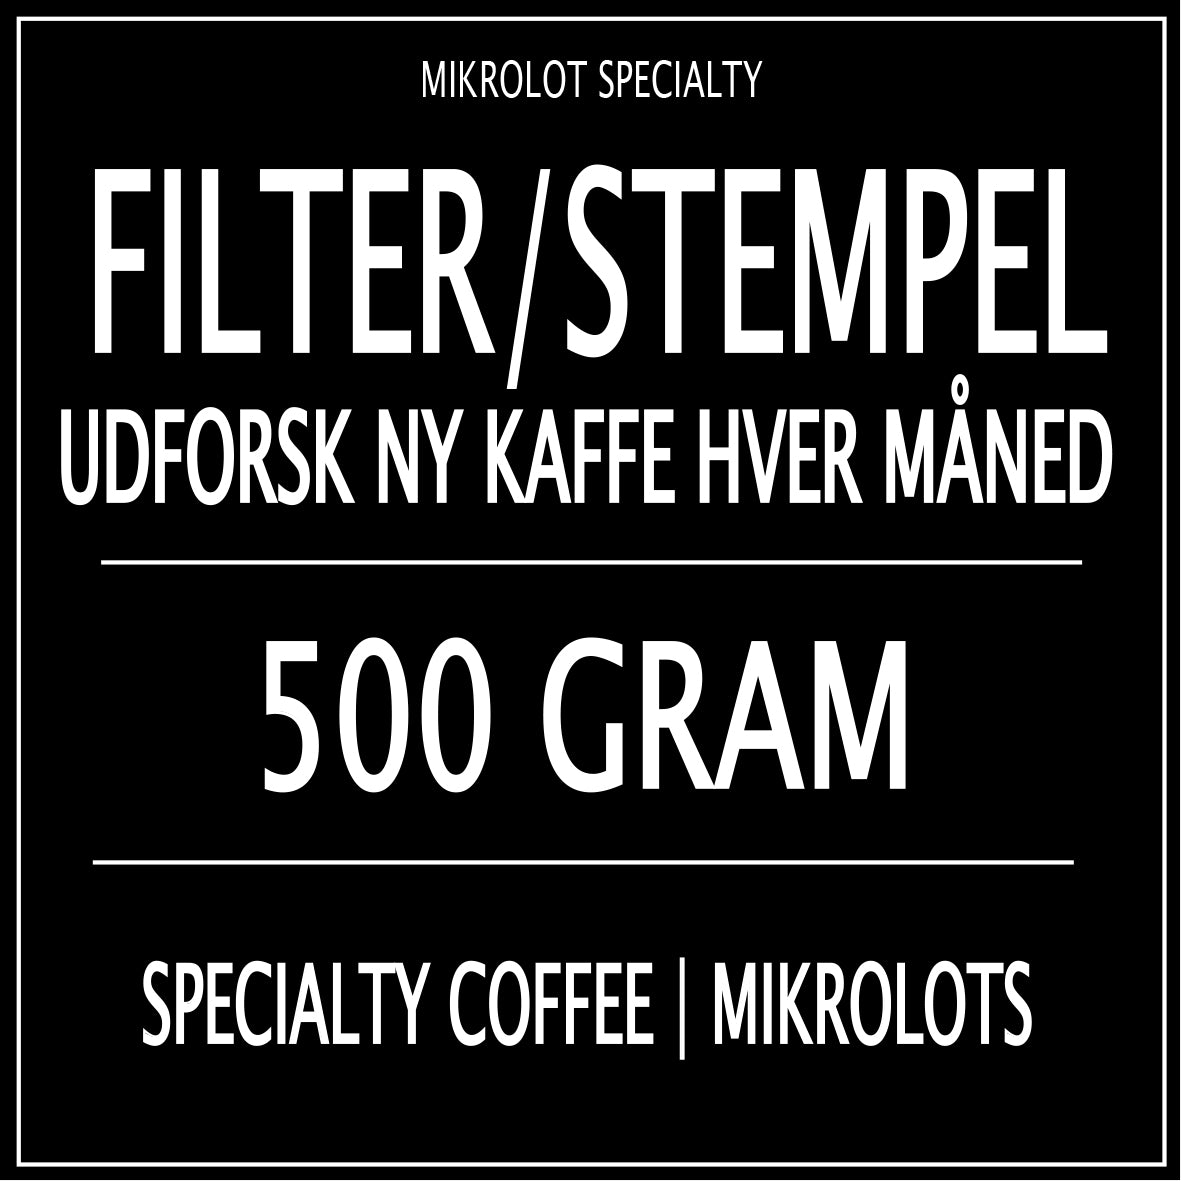 FILTER/STEMPEL ABONNEMENT 500 GRAM